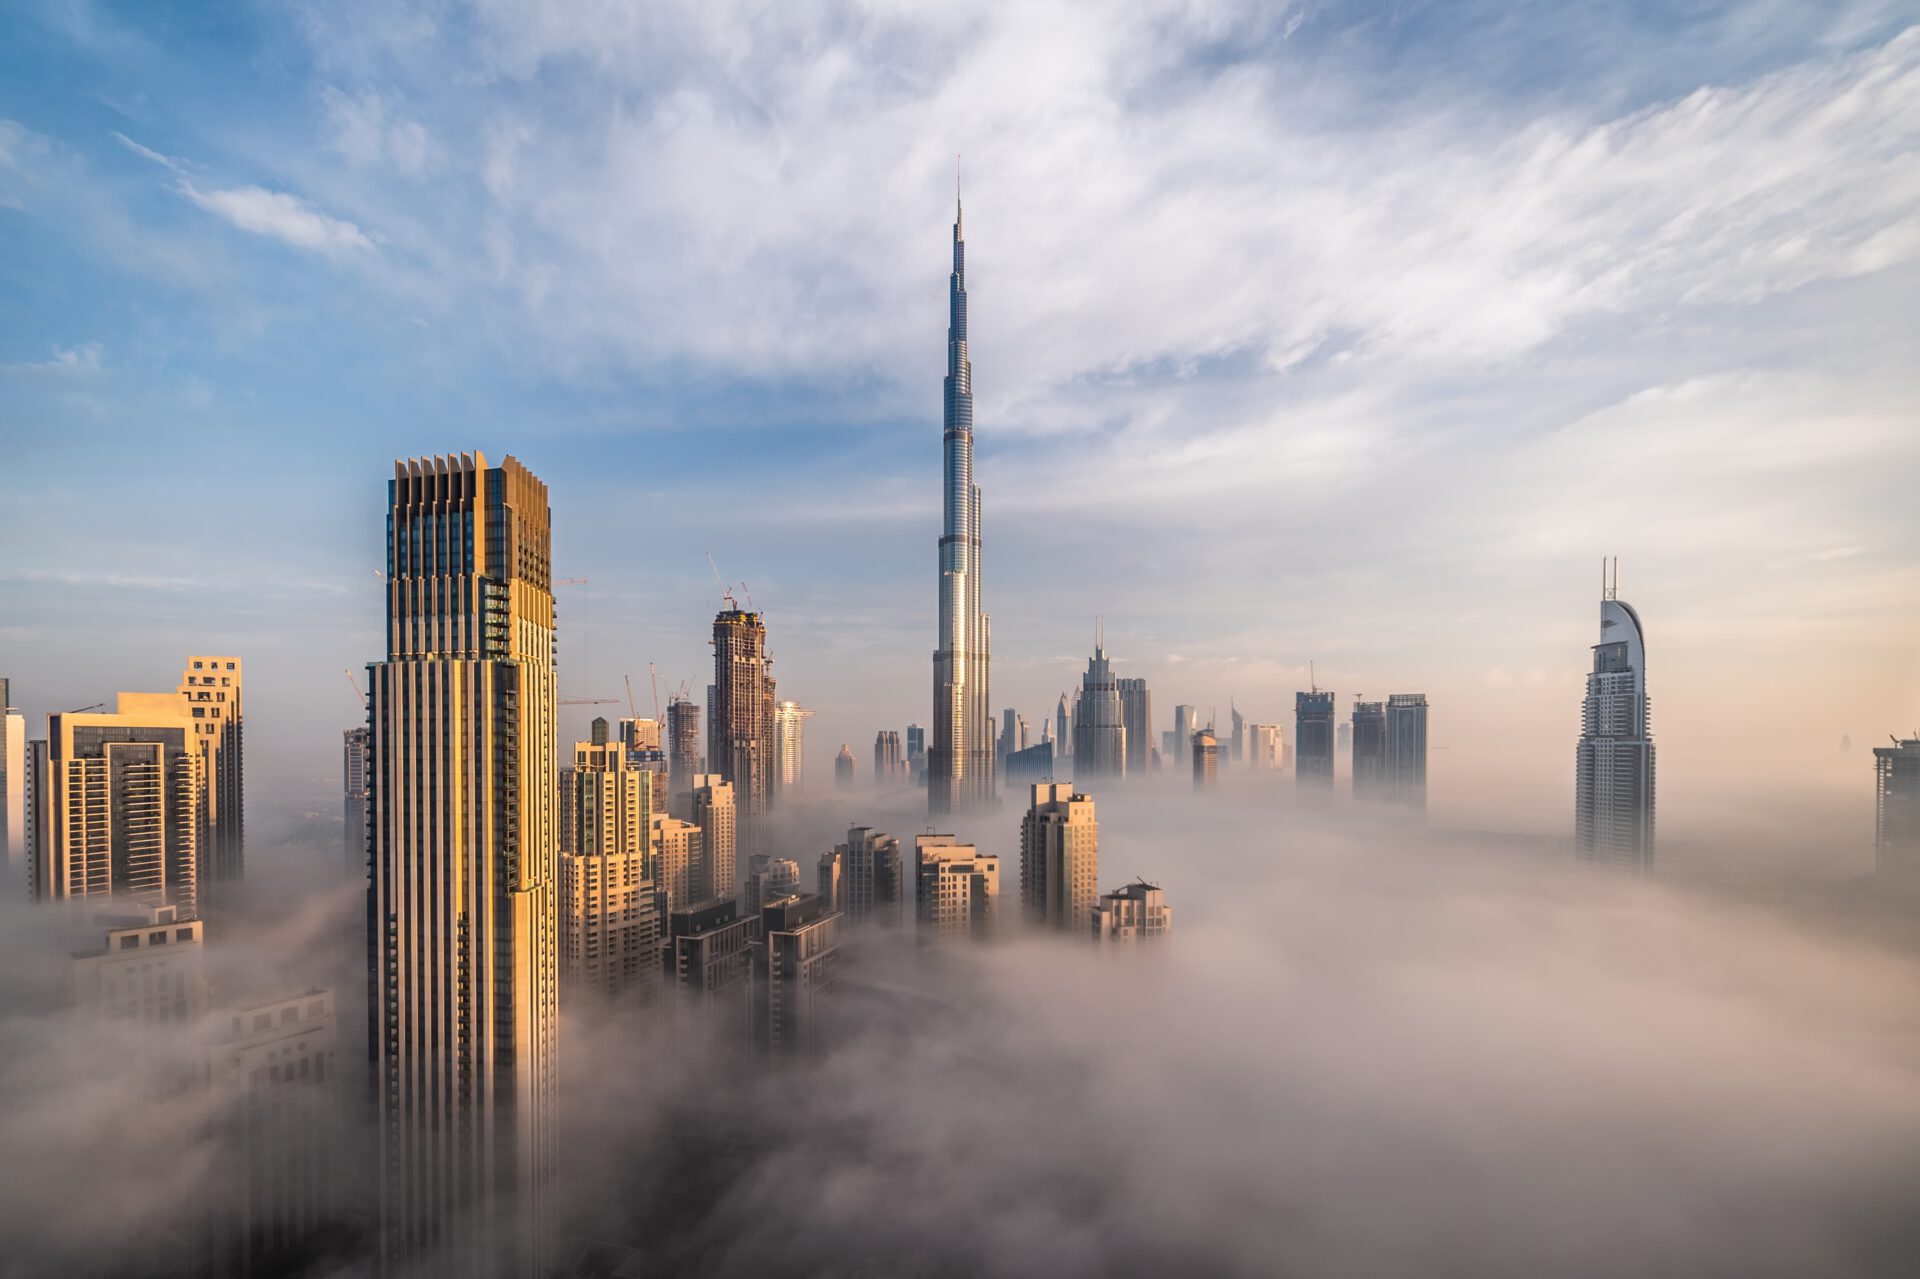 Dubai weather and climate - Fog